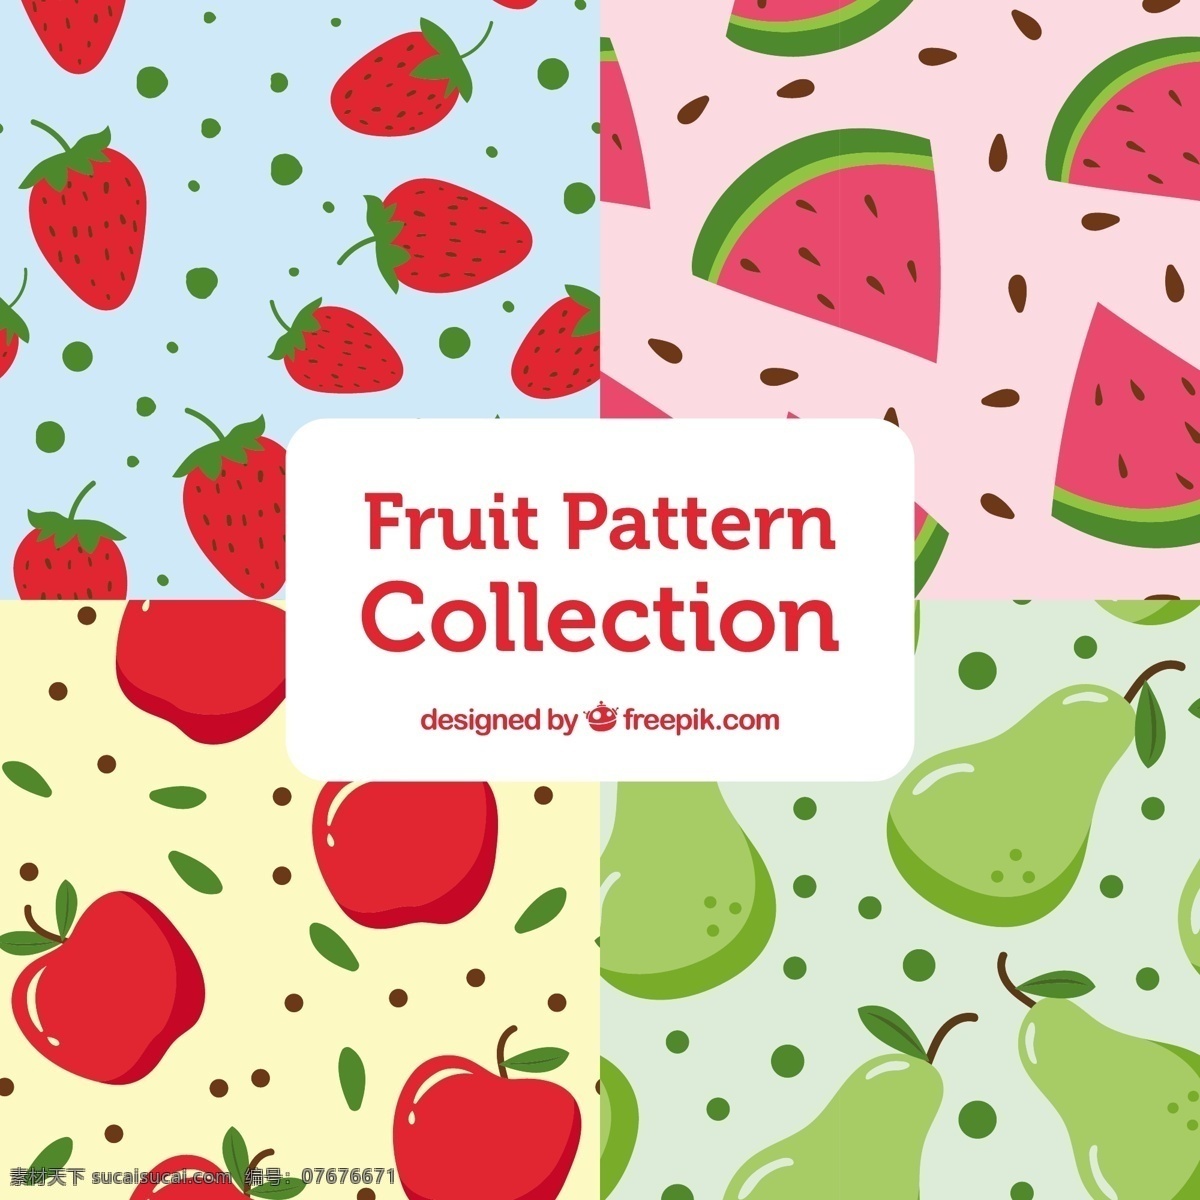 一大 袋 平坦 水果 图案 背景 食物 夏天 颜色 苹果 平板 装饰 丰富多彩 无缝的图案 自然 健康 平面设计 草莓 自然背景